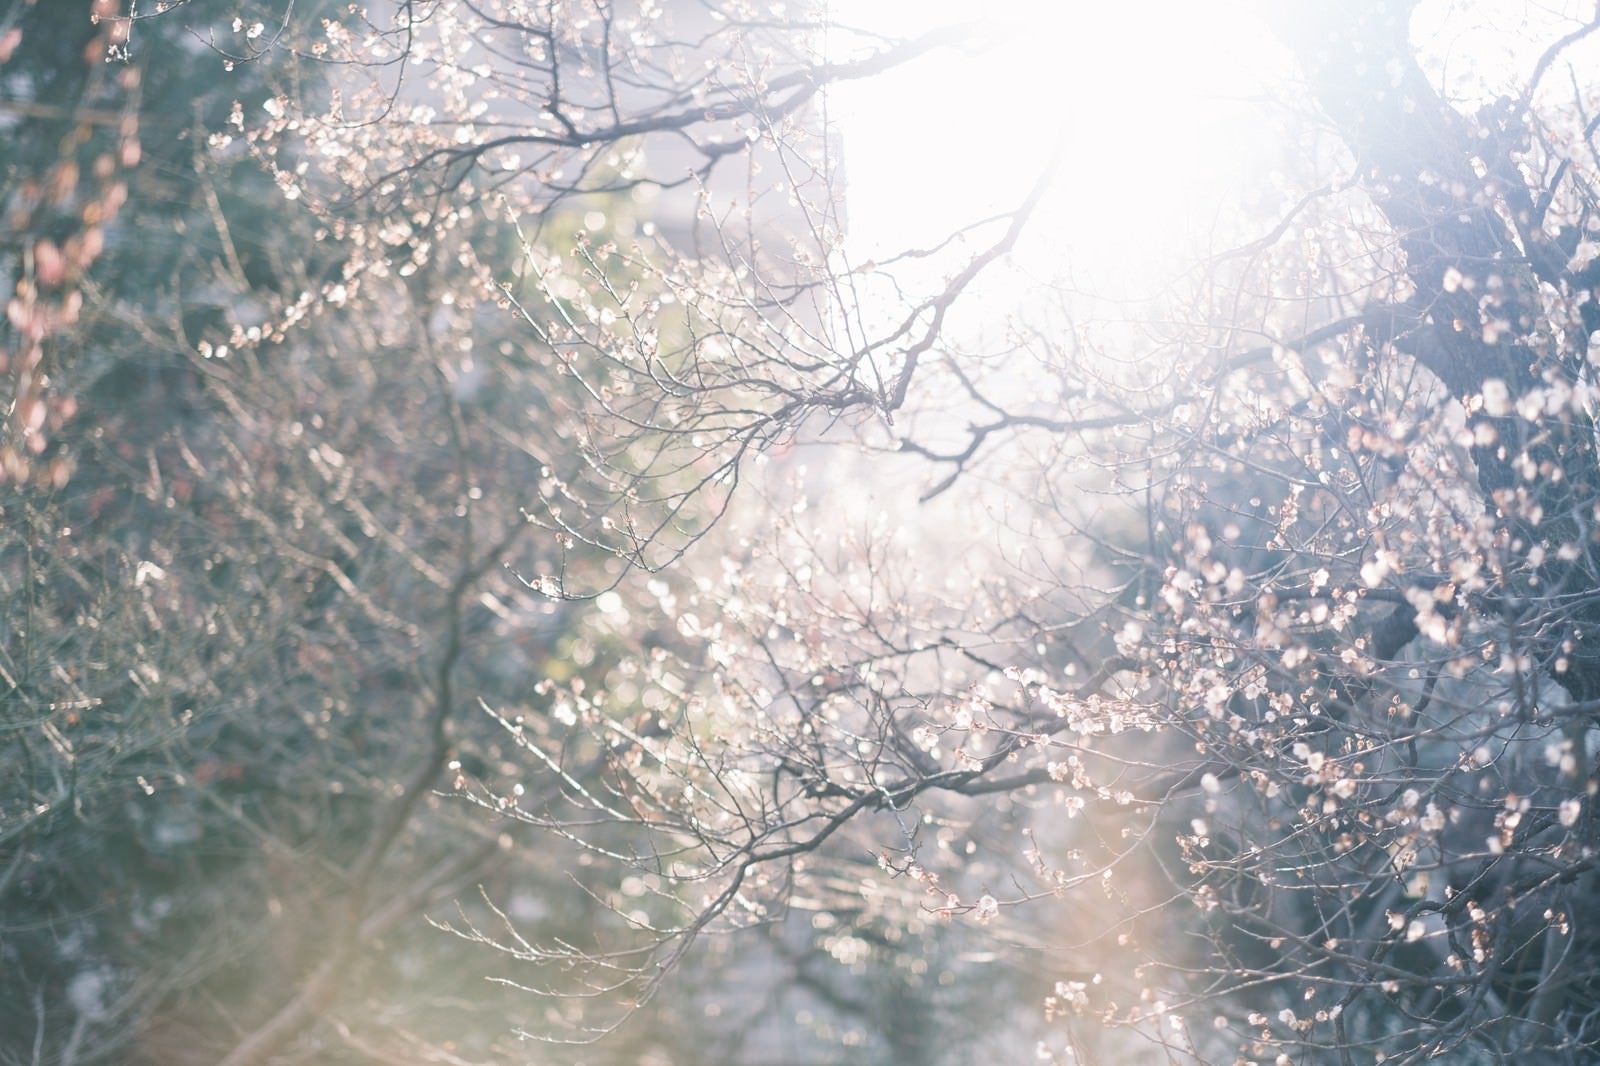 「逆光の中に揺らめく梅の花」の写真